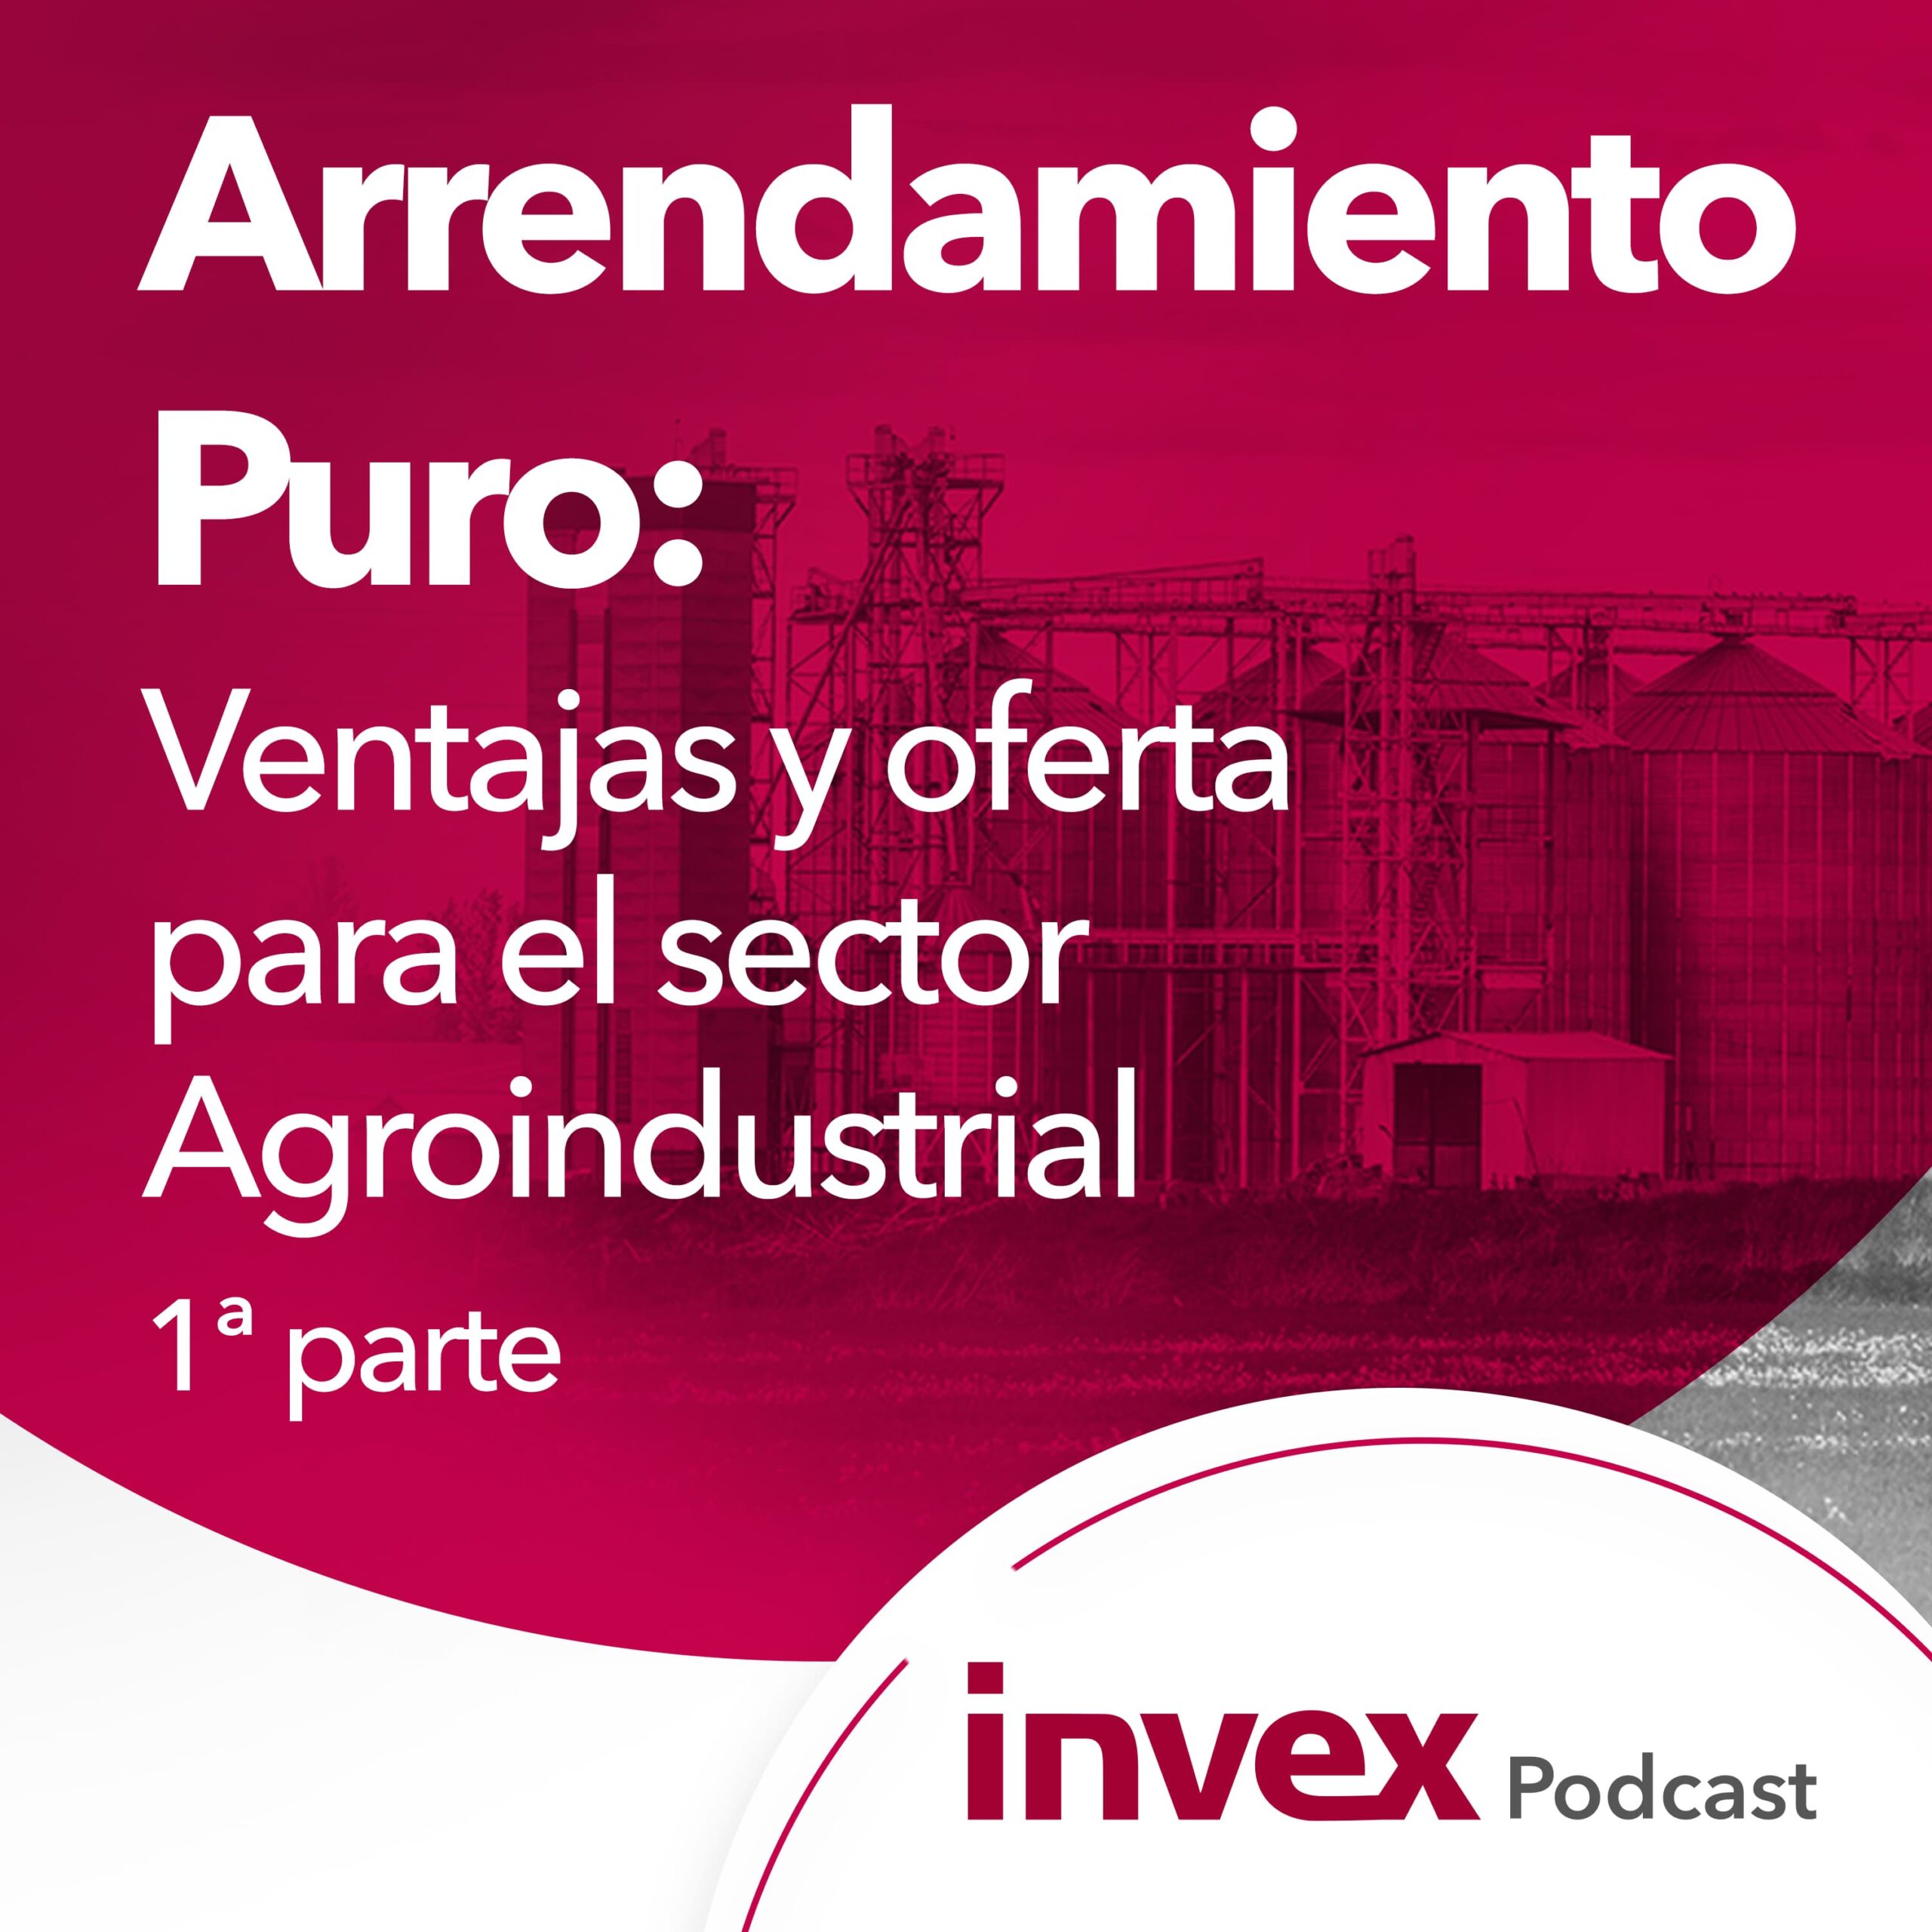 Arrendamiento Puro: Ventajas y oferta para el sector Agroindustrial